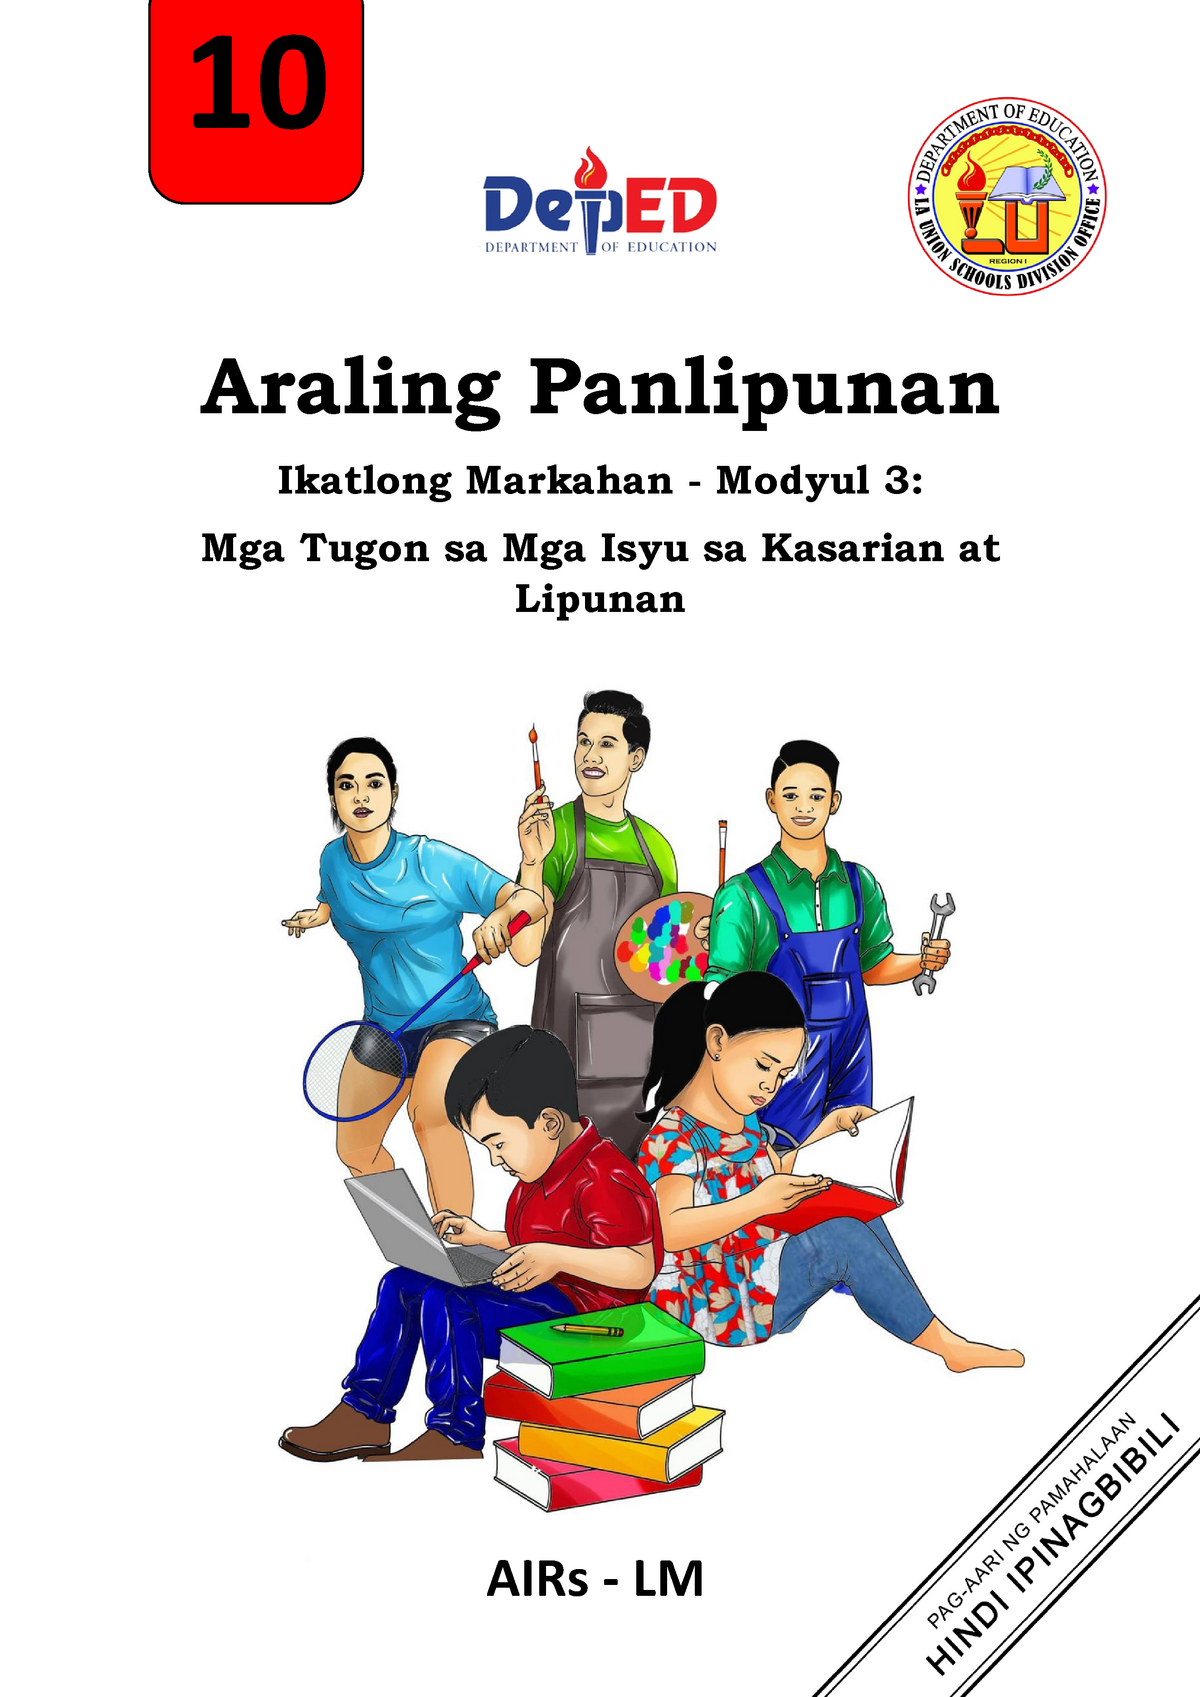 week-2-pdf-2-araling-panlipunan-ikalawang-markahan-modyul-2-vrogue